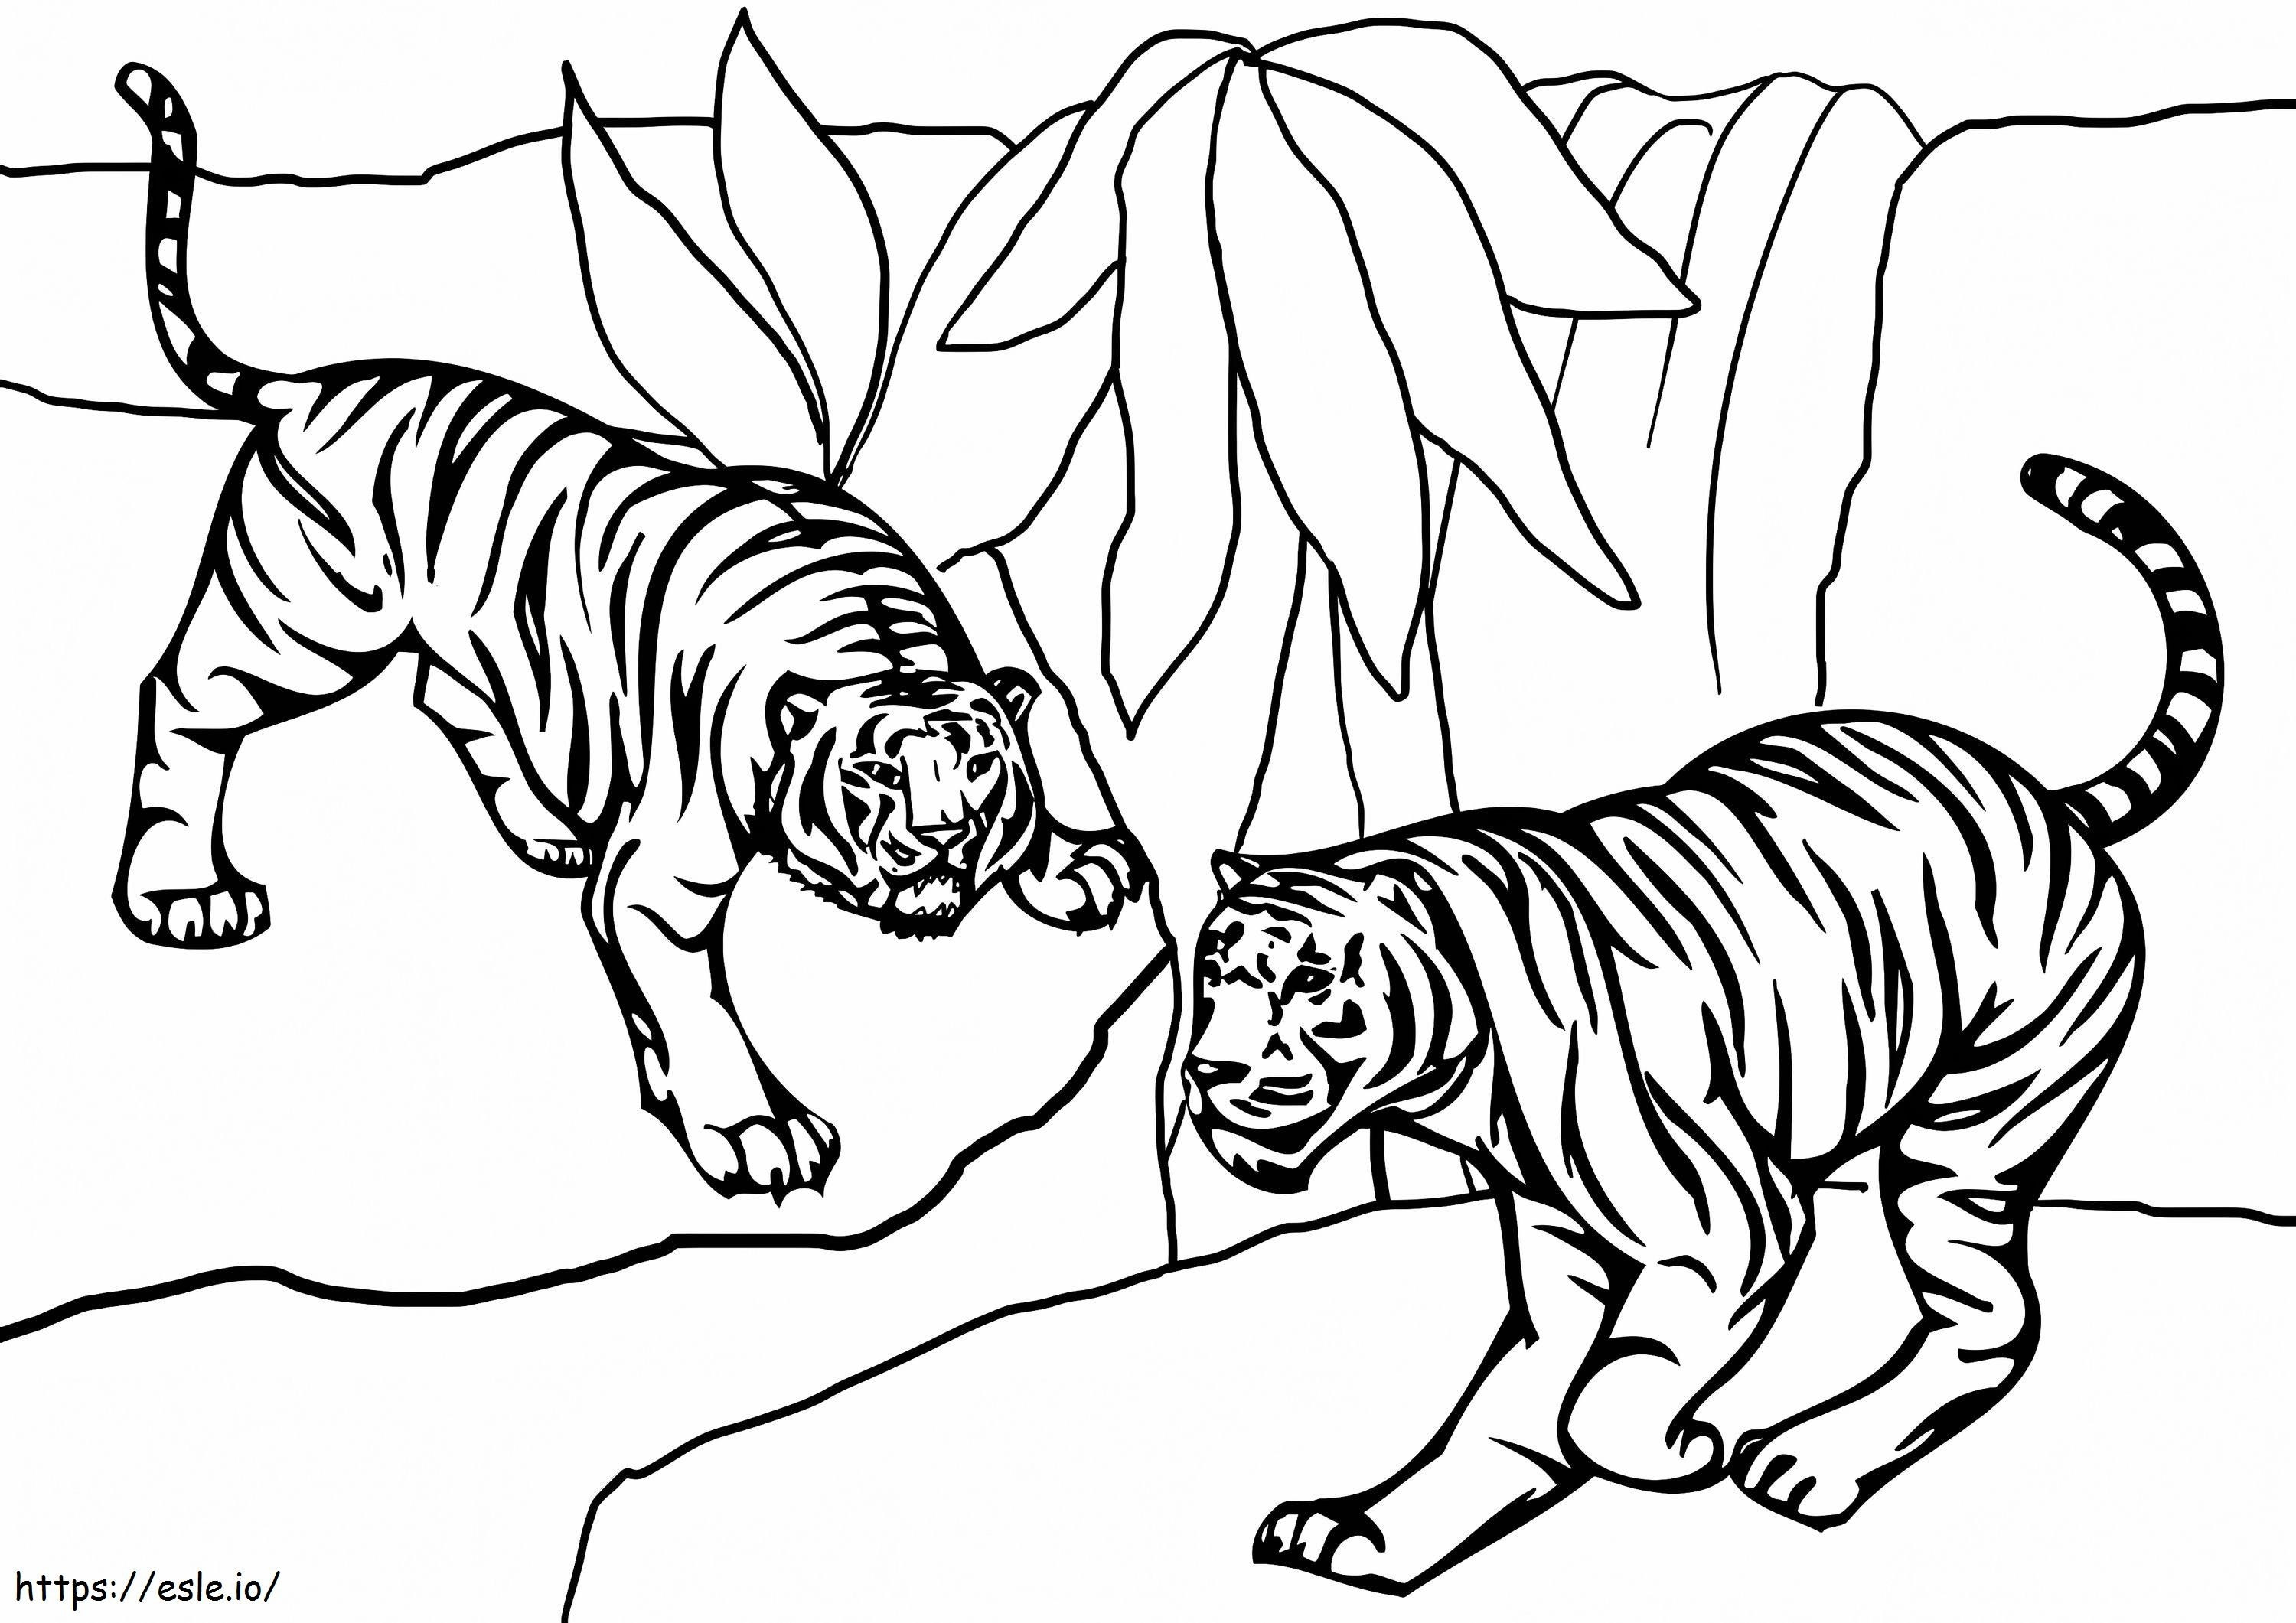 Zwei Tiger ausmalbilder